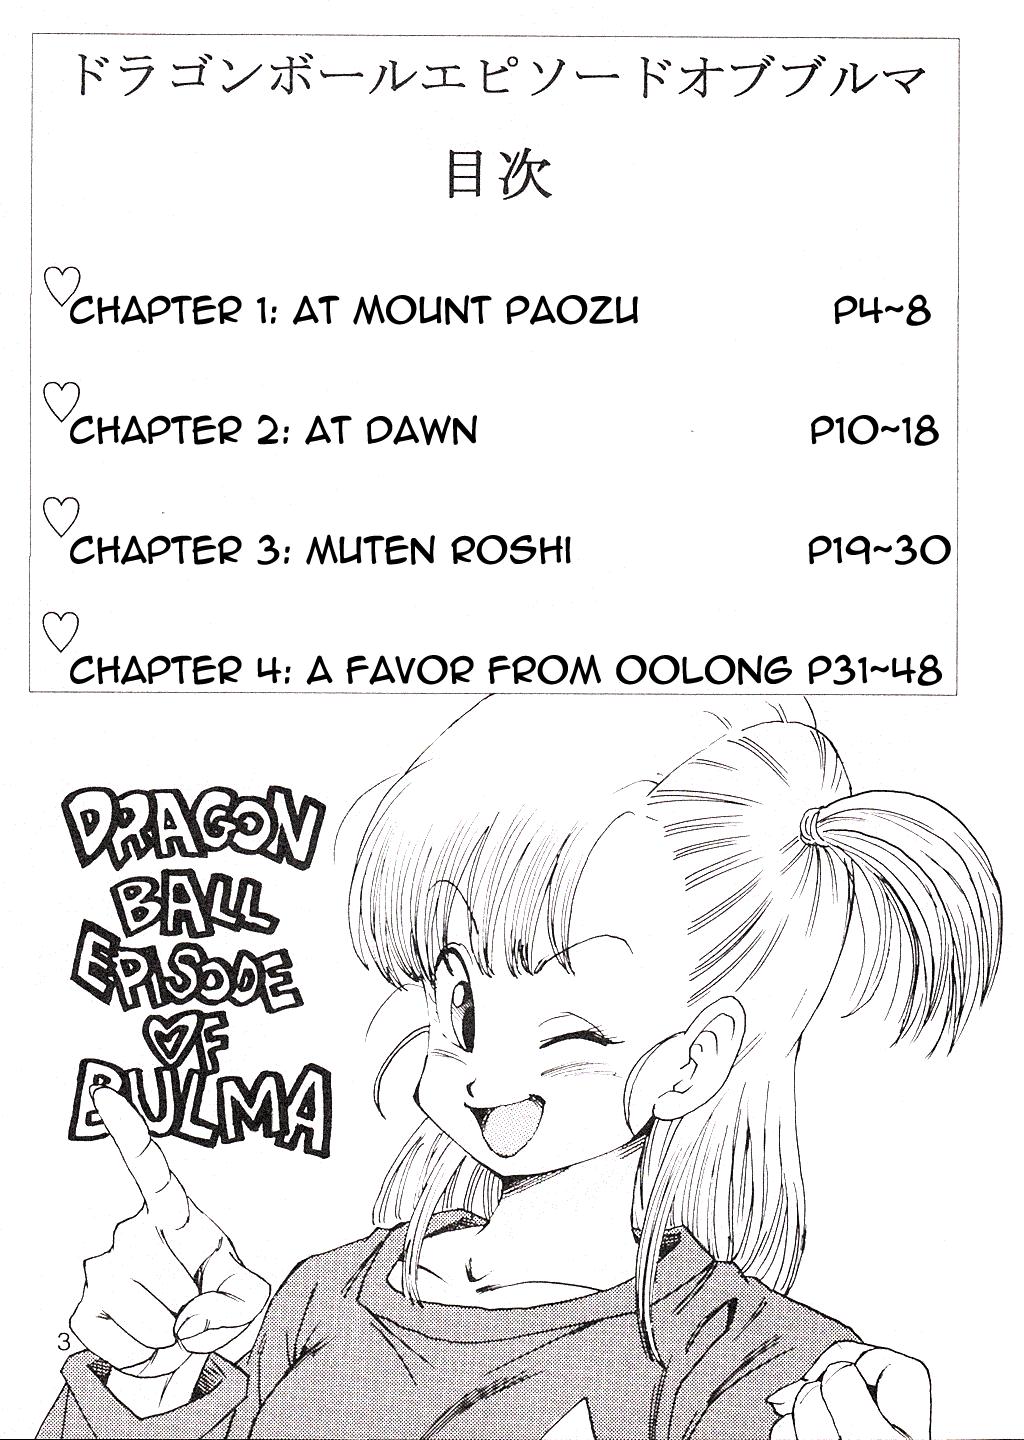  Dragon Ball EB Episode of Bulma - Dragon ball Tanga - Page 4